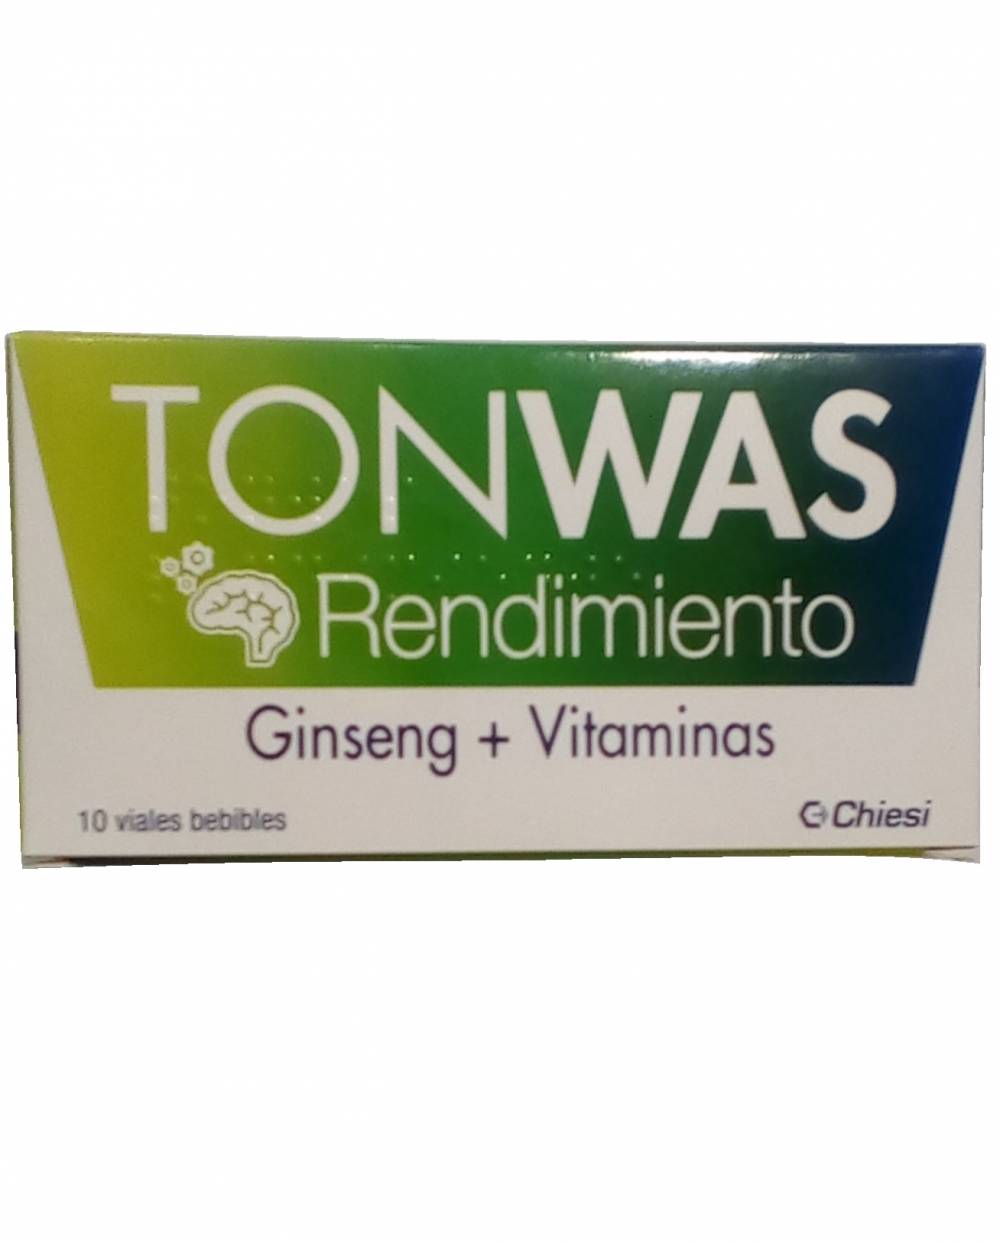 Tonwas - rendimiento - 10 viales bebibles